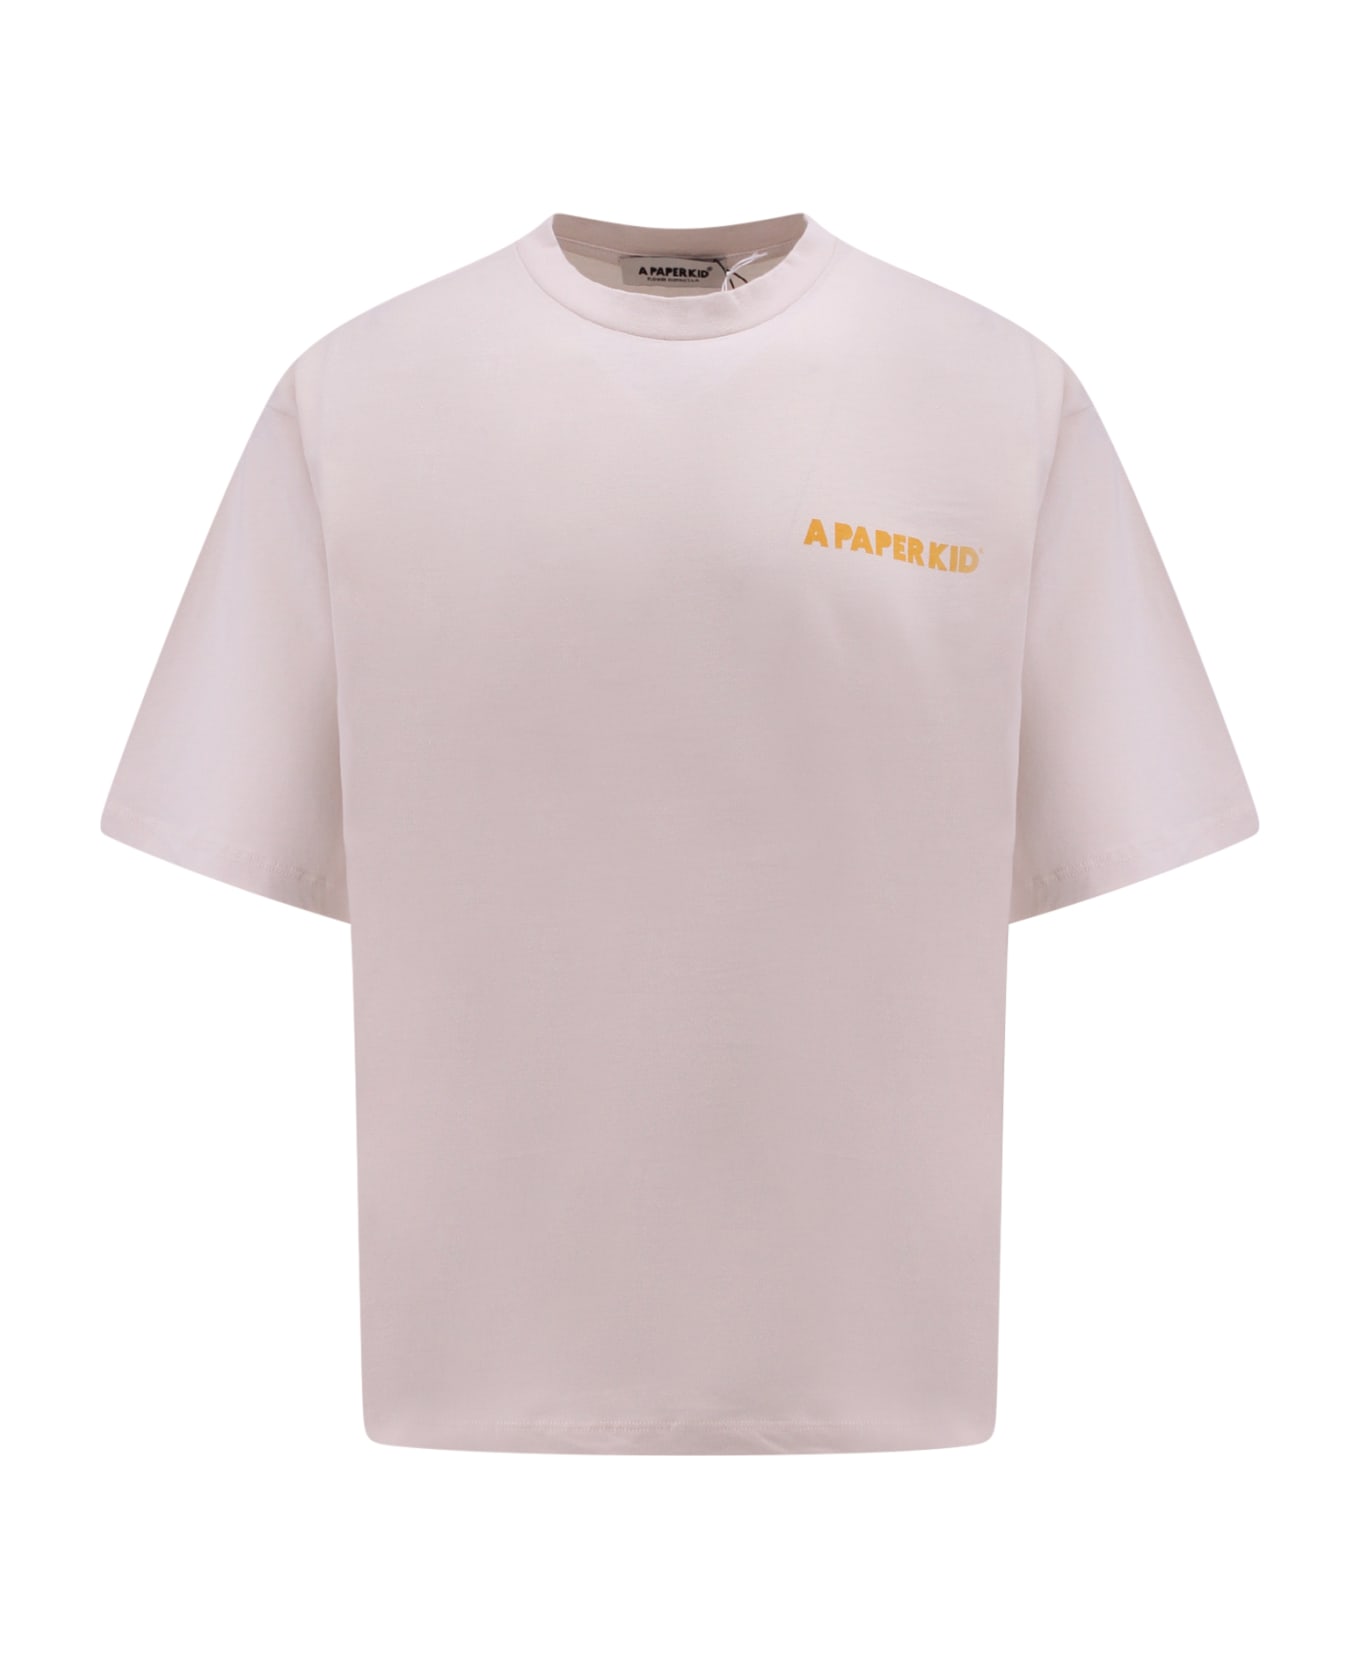 A Paper Kid T-shirt - Crema